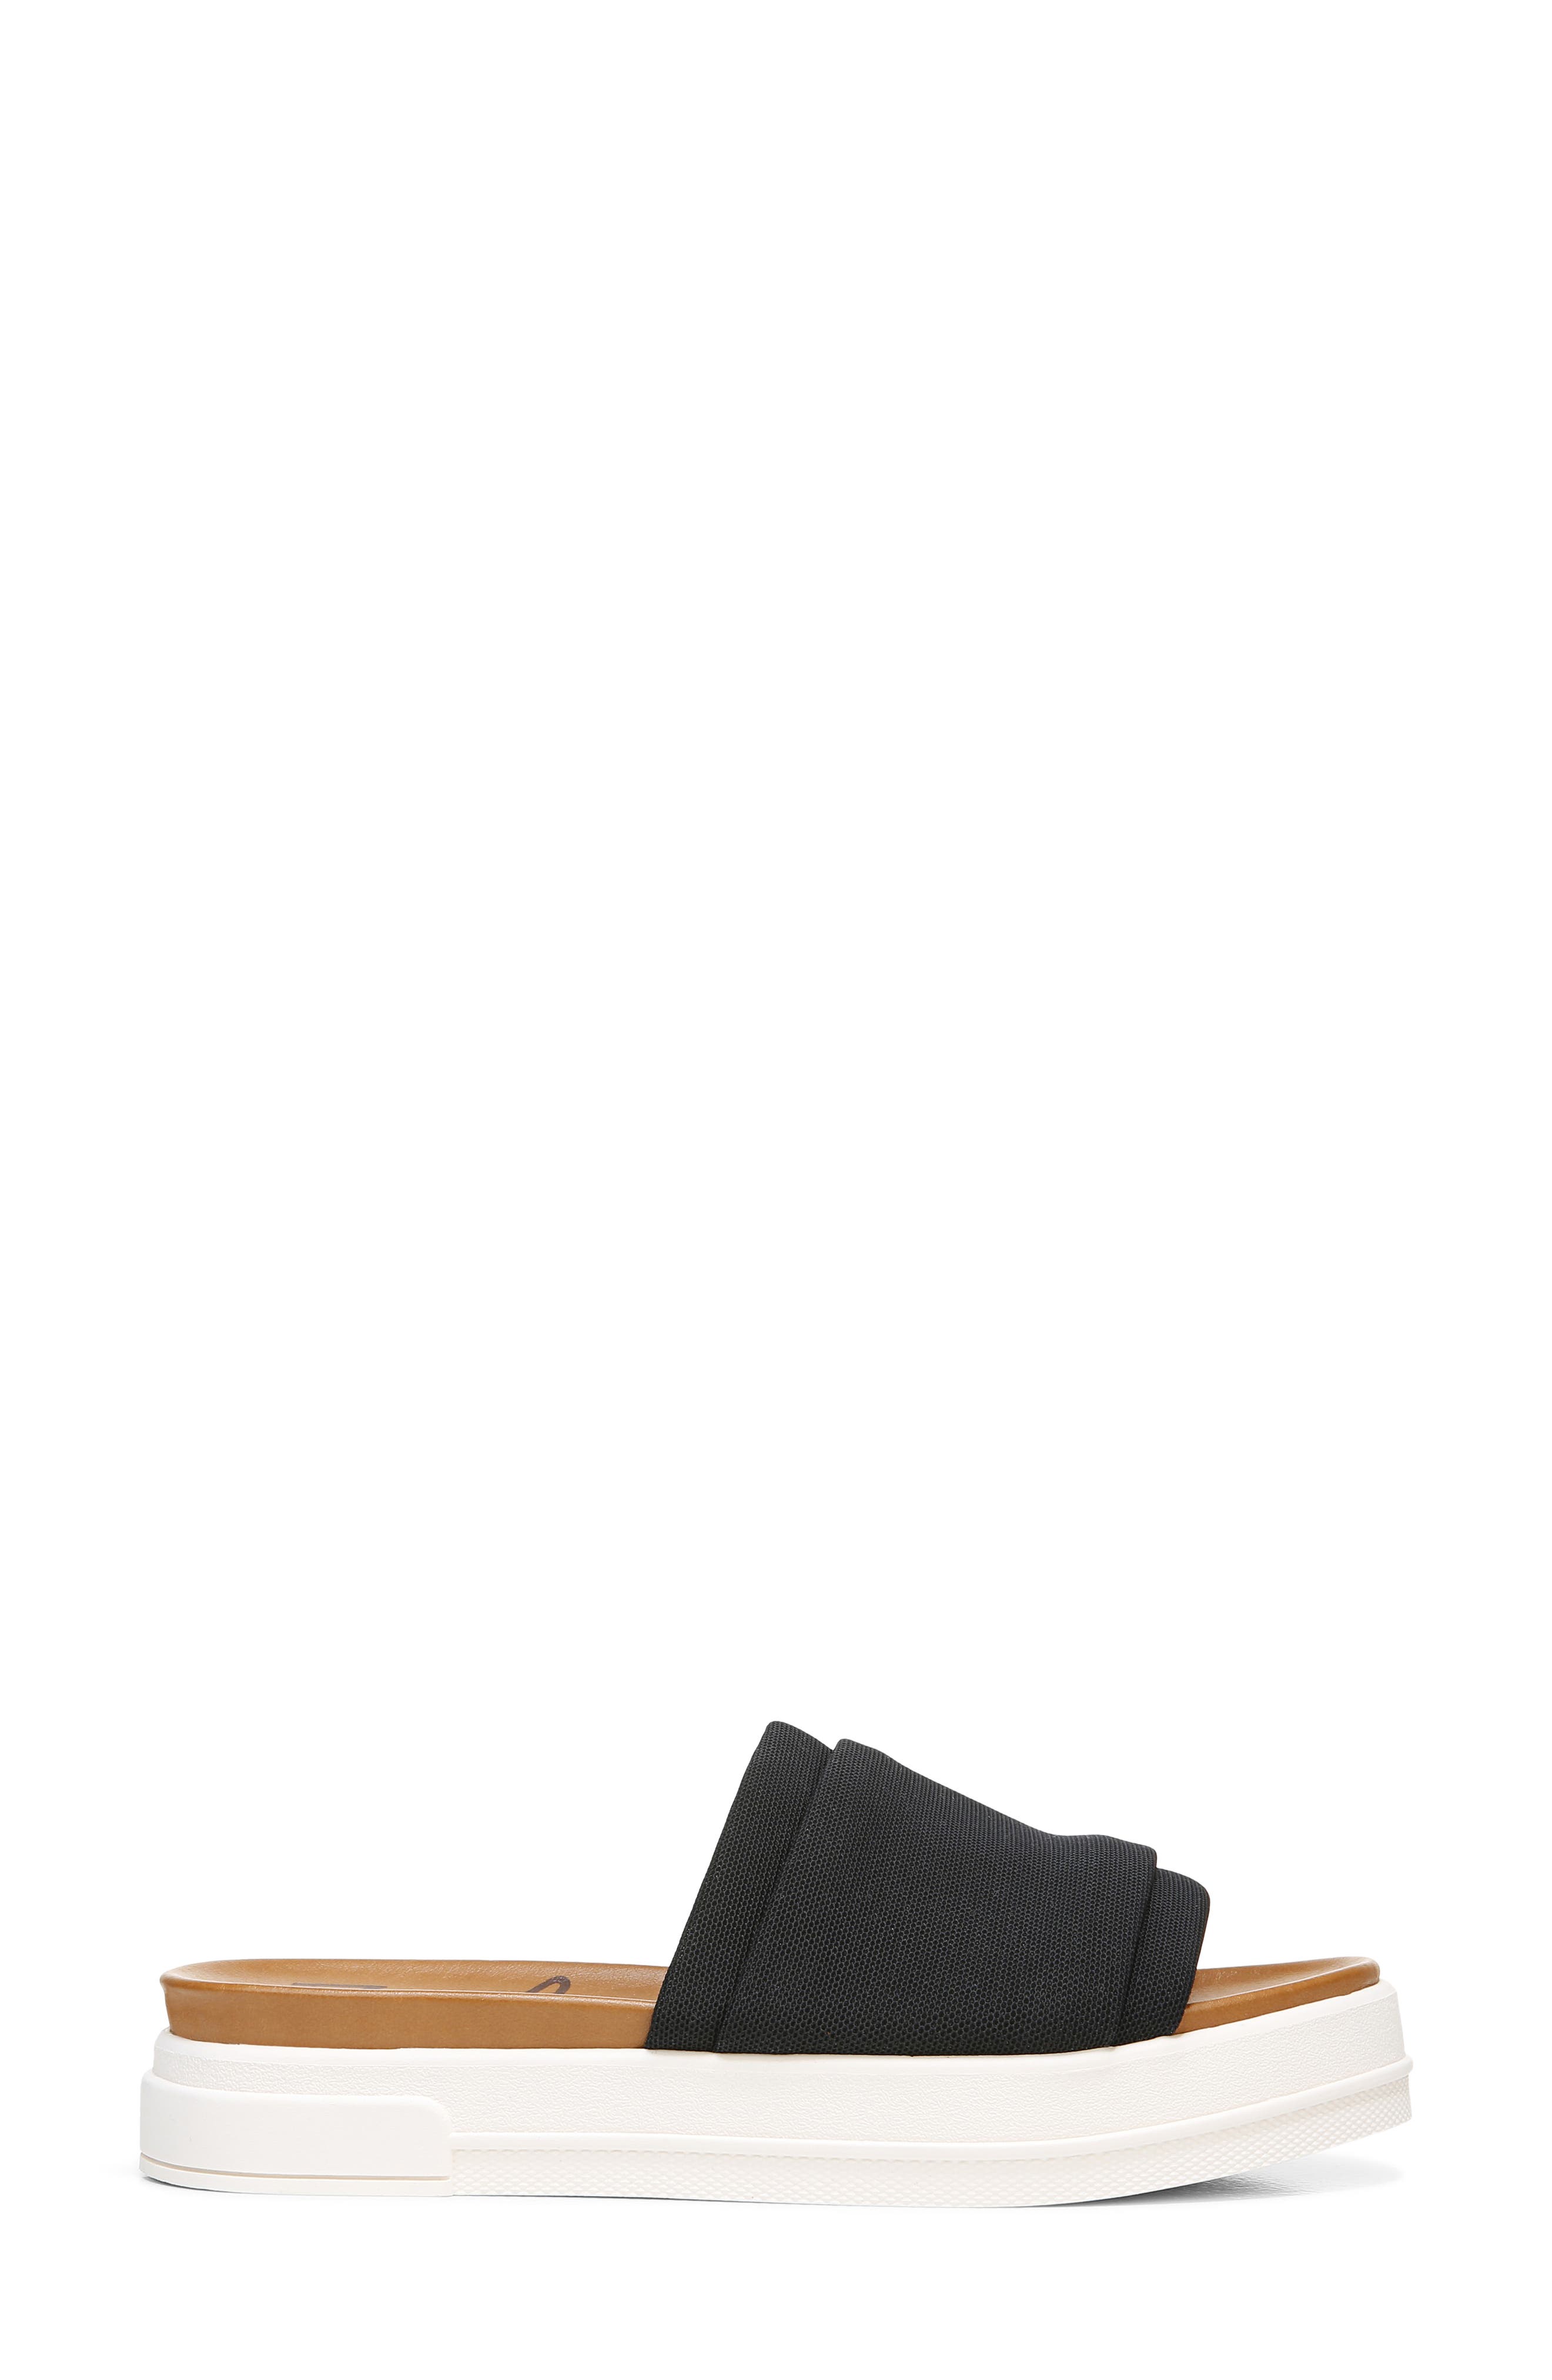 Teva Men's Terra-Float Knit Slide Sandals Color Black 1092189 